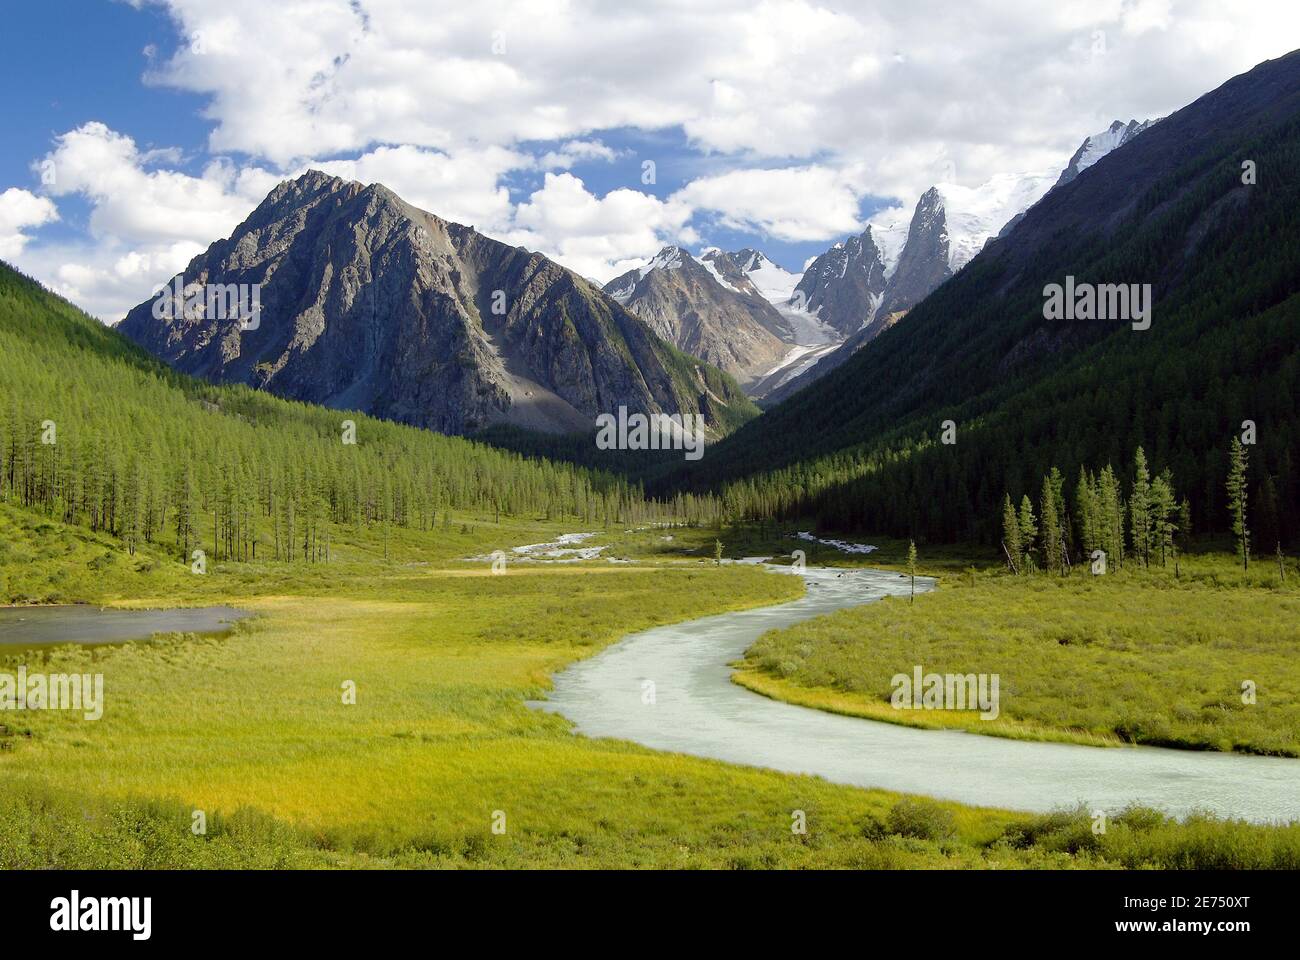 Montagne Altaï - vallée de savane ou de szavlo - Russie Banque D'Images